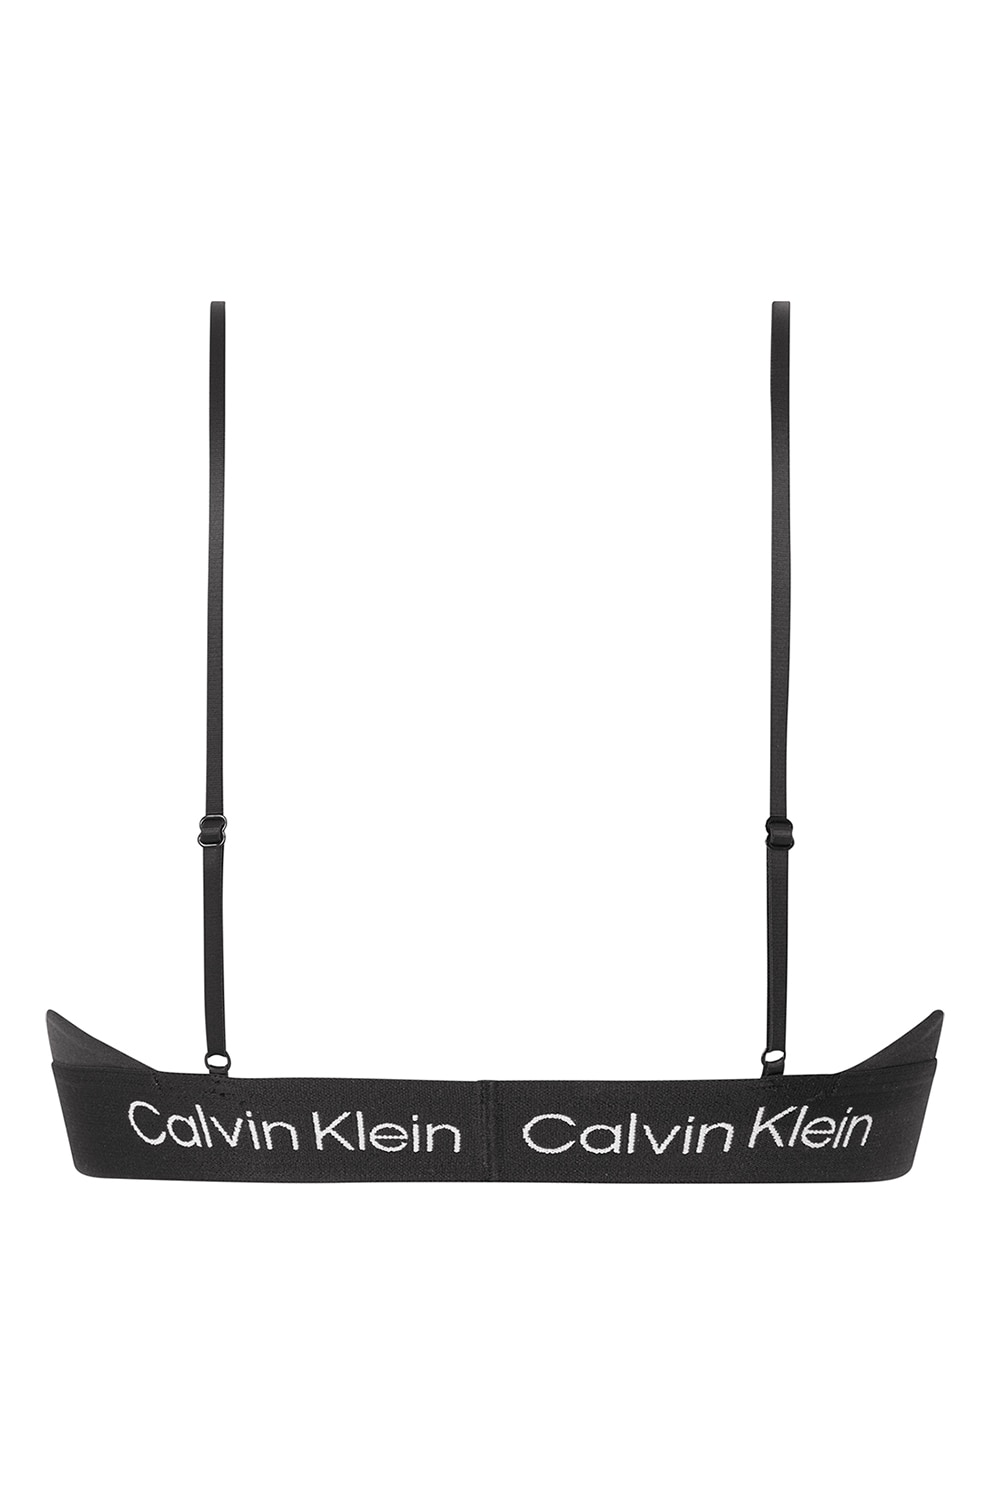 Bustiera Calvin Klein cu perforatii si inscriptie logo, dama